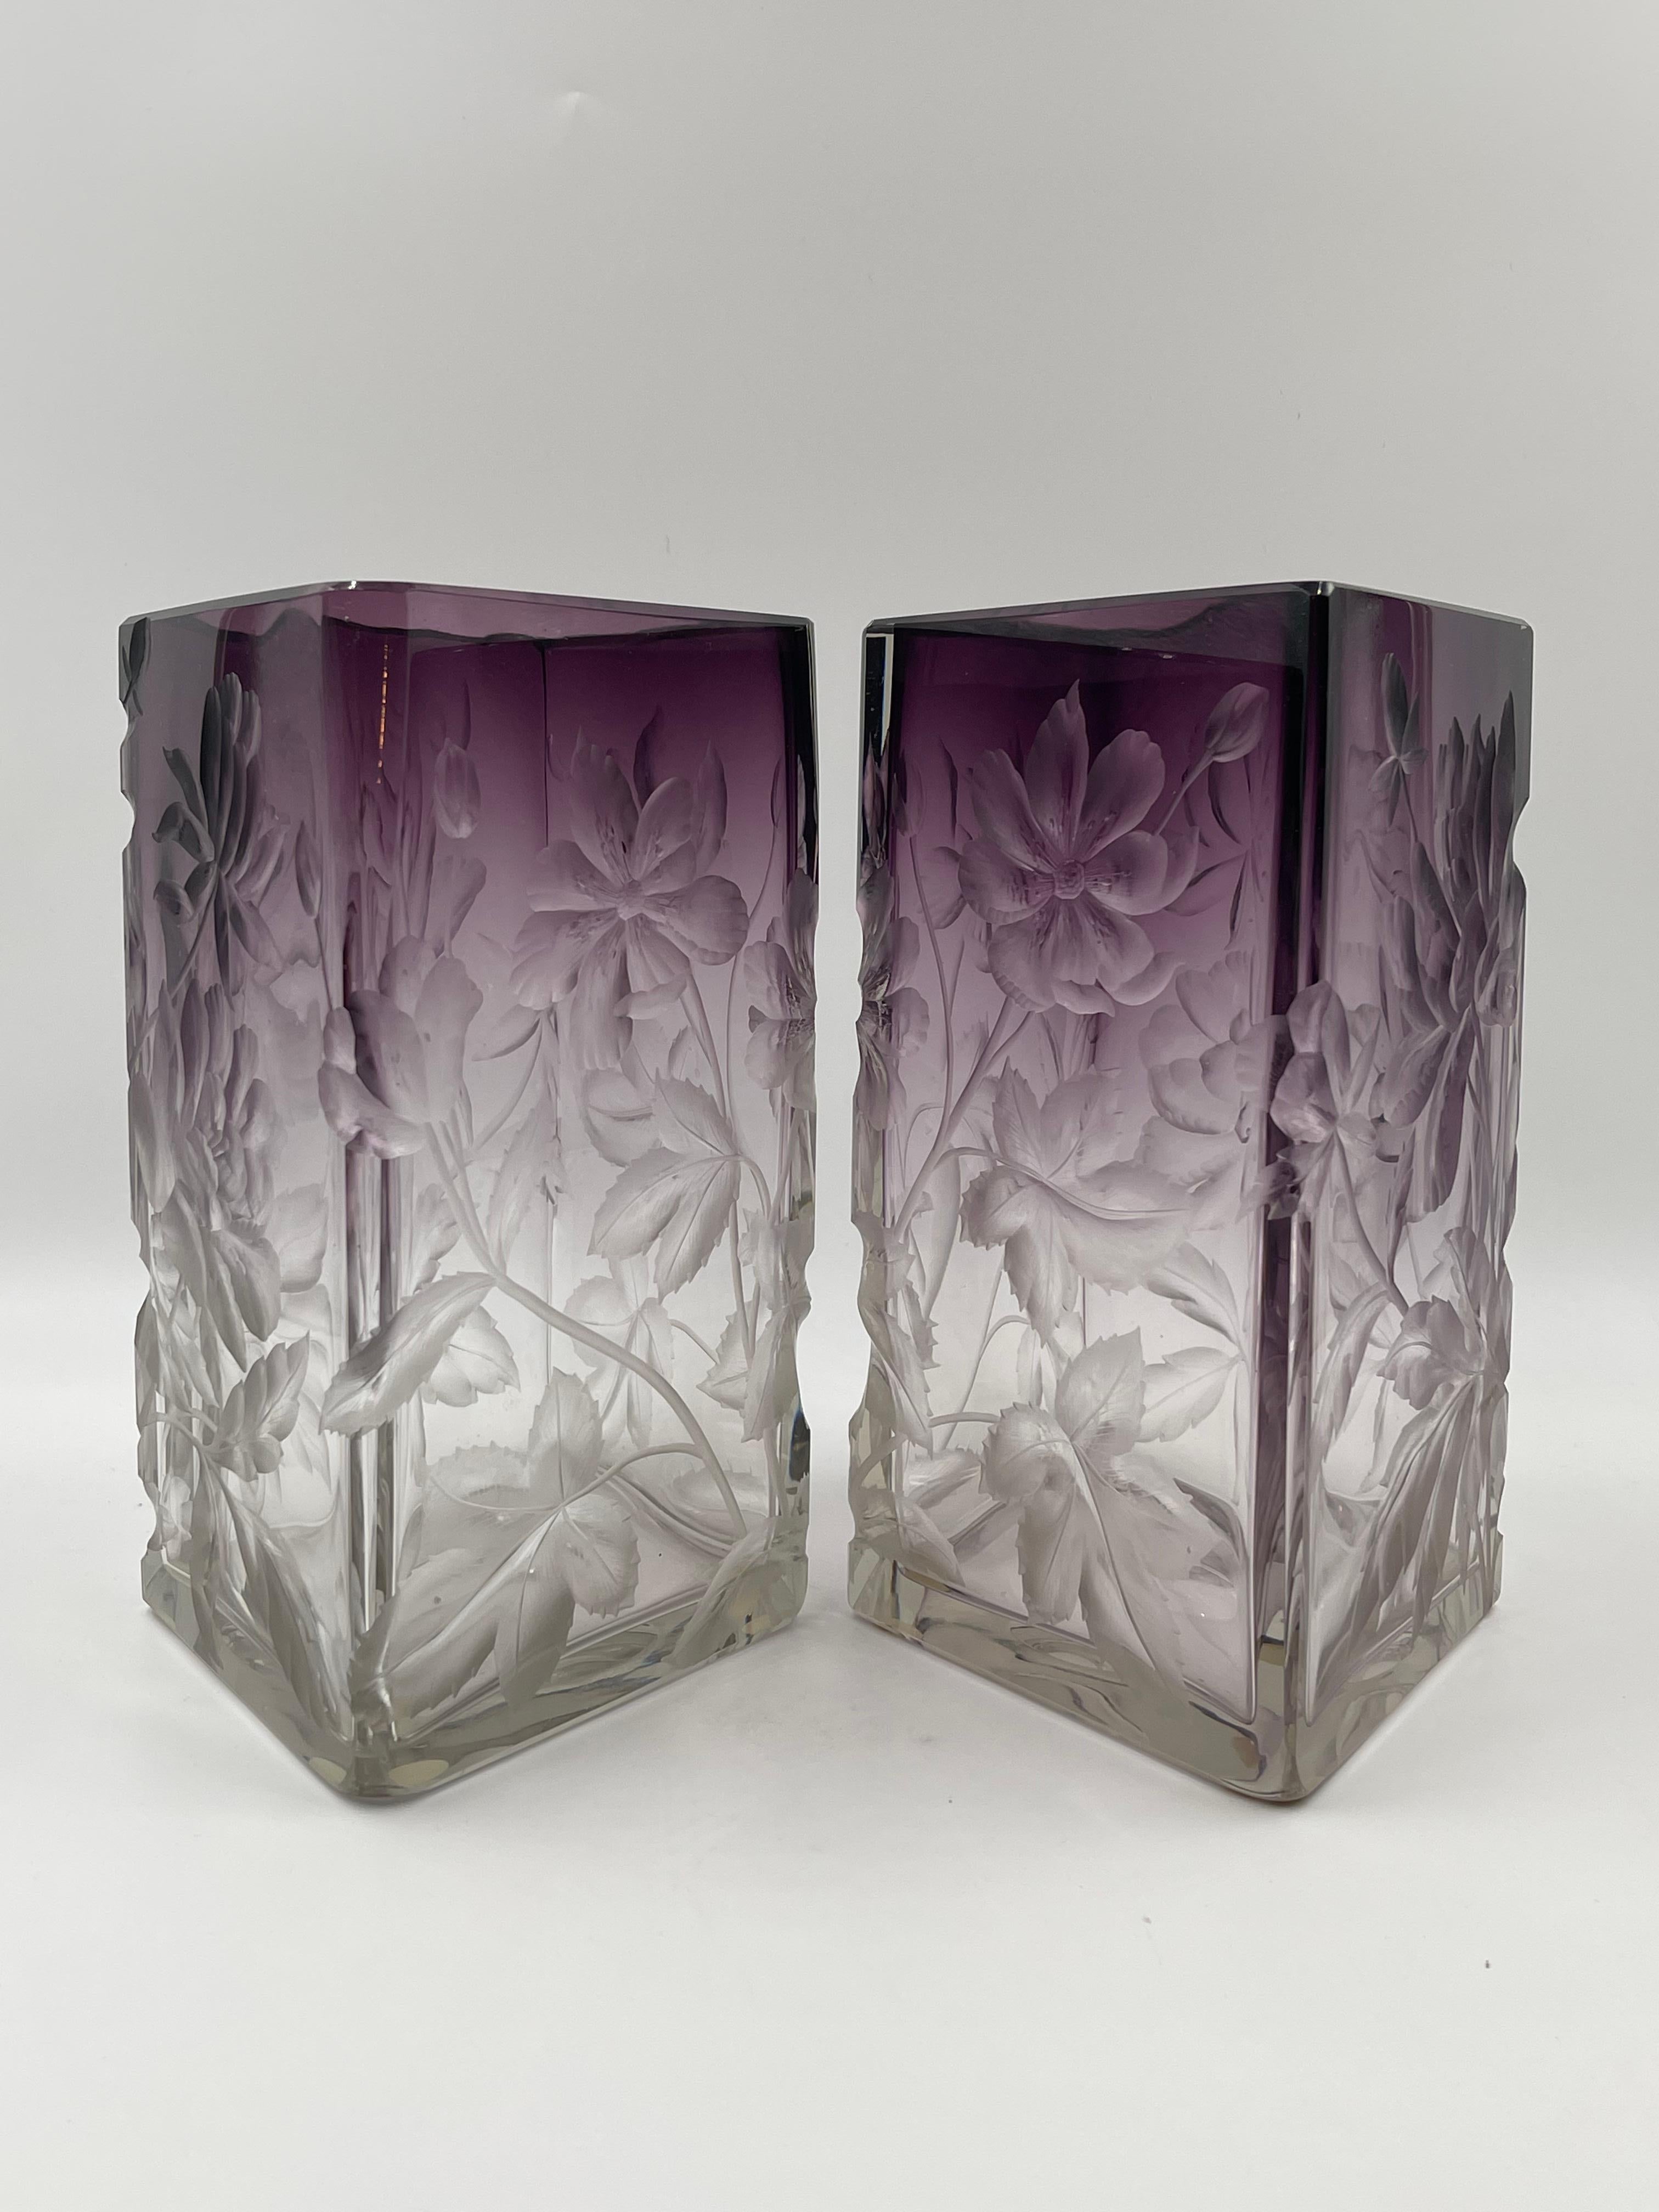 Une paire inhabituelle de vases Moser sculptés en taille-douce. Ils sont dans une forme rare de diamant et seraient parfaits sur une cheminée ou un buffet.